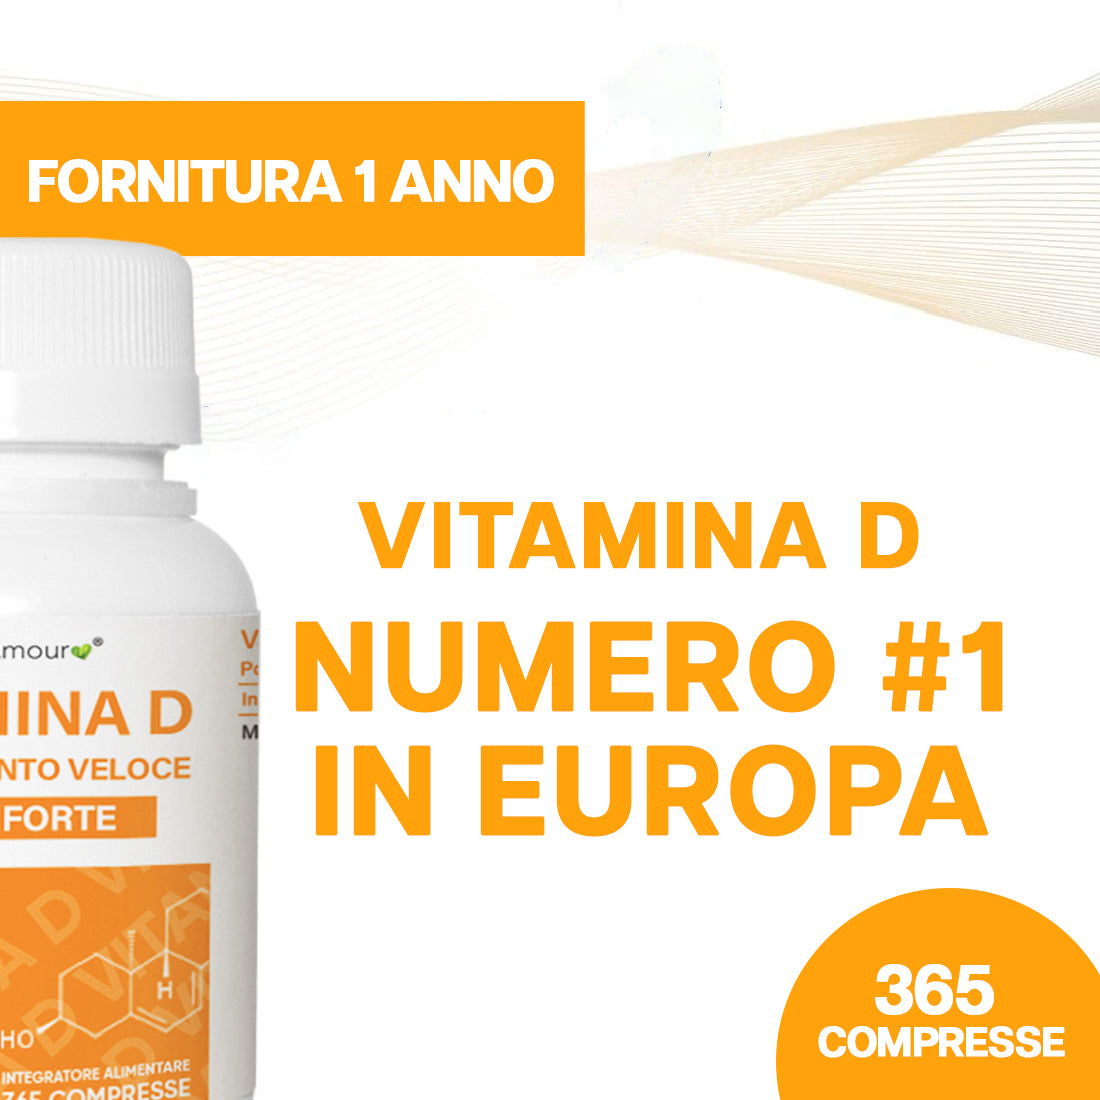 HerbAmour® Vitamina D